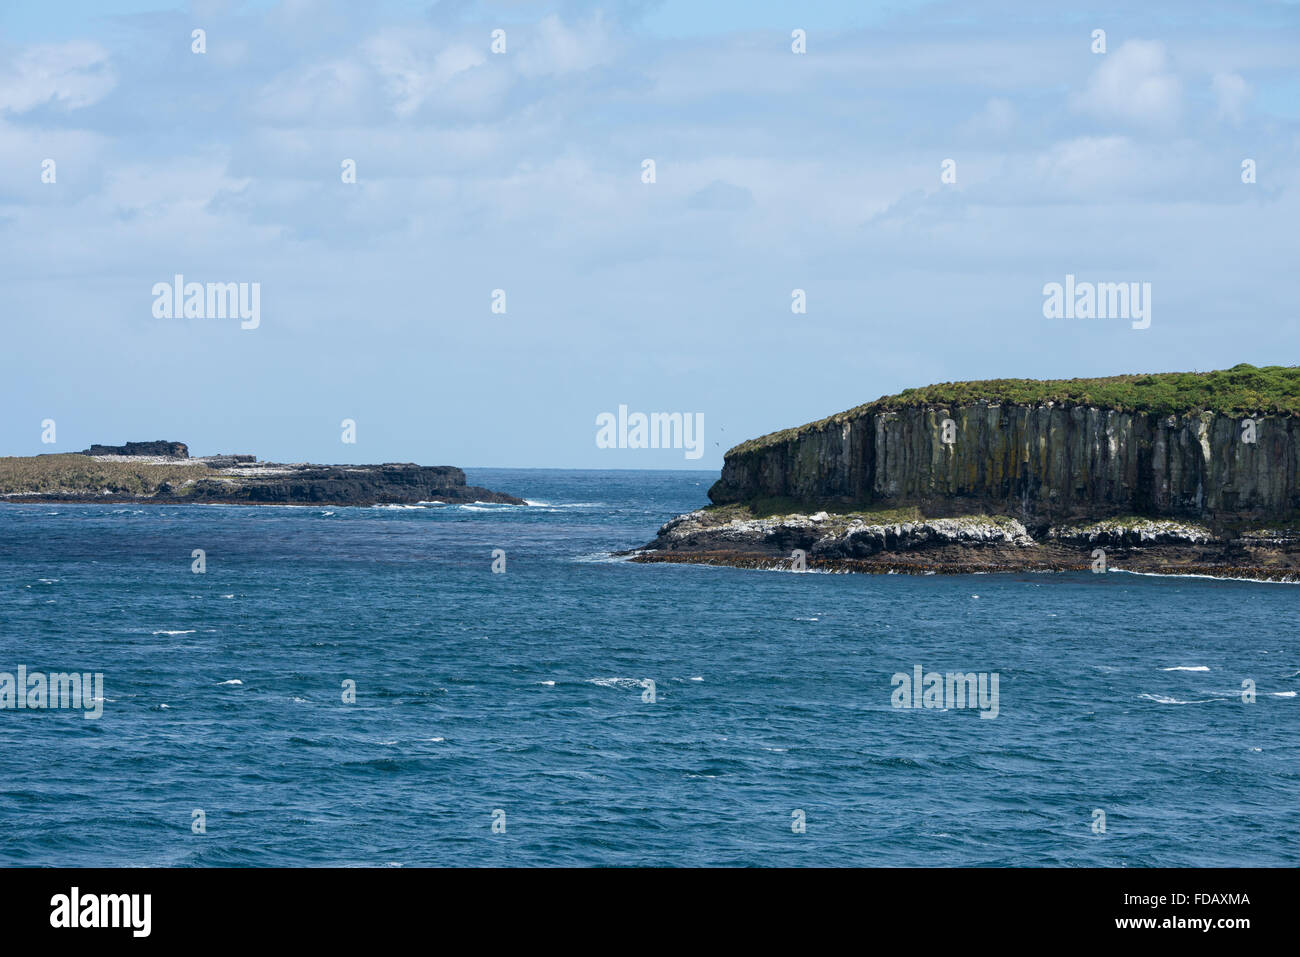 Nuova Zelanda, Auckland isole disabitate arcipelago nell'Oceano Pacifico del sud. Oceano Meridionale vista delle scogliere a Enderby. Foto Stock